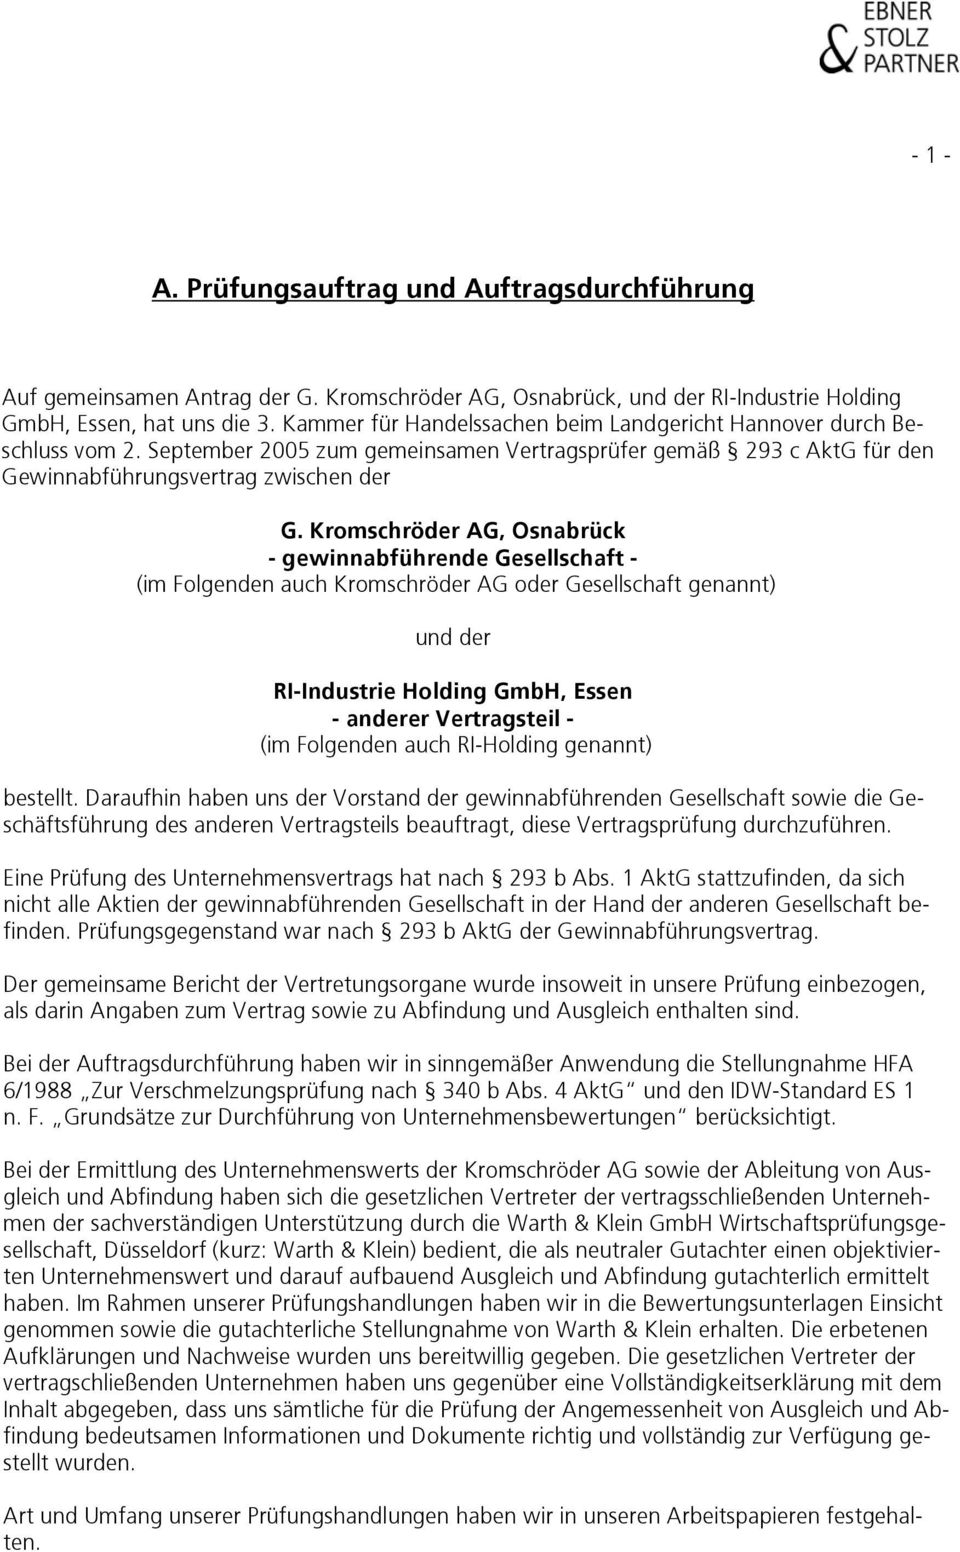 Kromschröder AG, Osnabrück - gewinnabführende Gesellschaft - (im Folgenden auch Kromschröder AG oder Gesellschaft genannt) und der RI-Industrie Holding GmbH, Essen - anderer Vertragsteil - (im